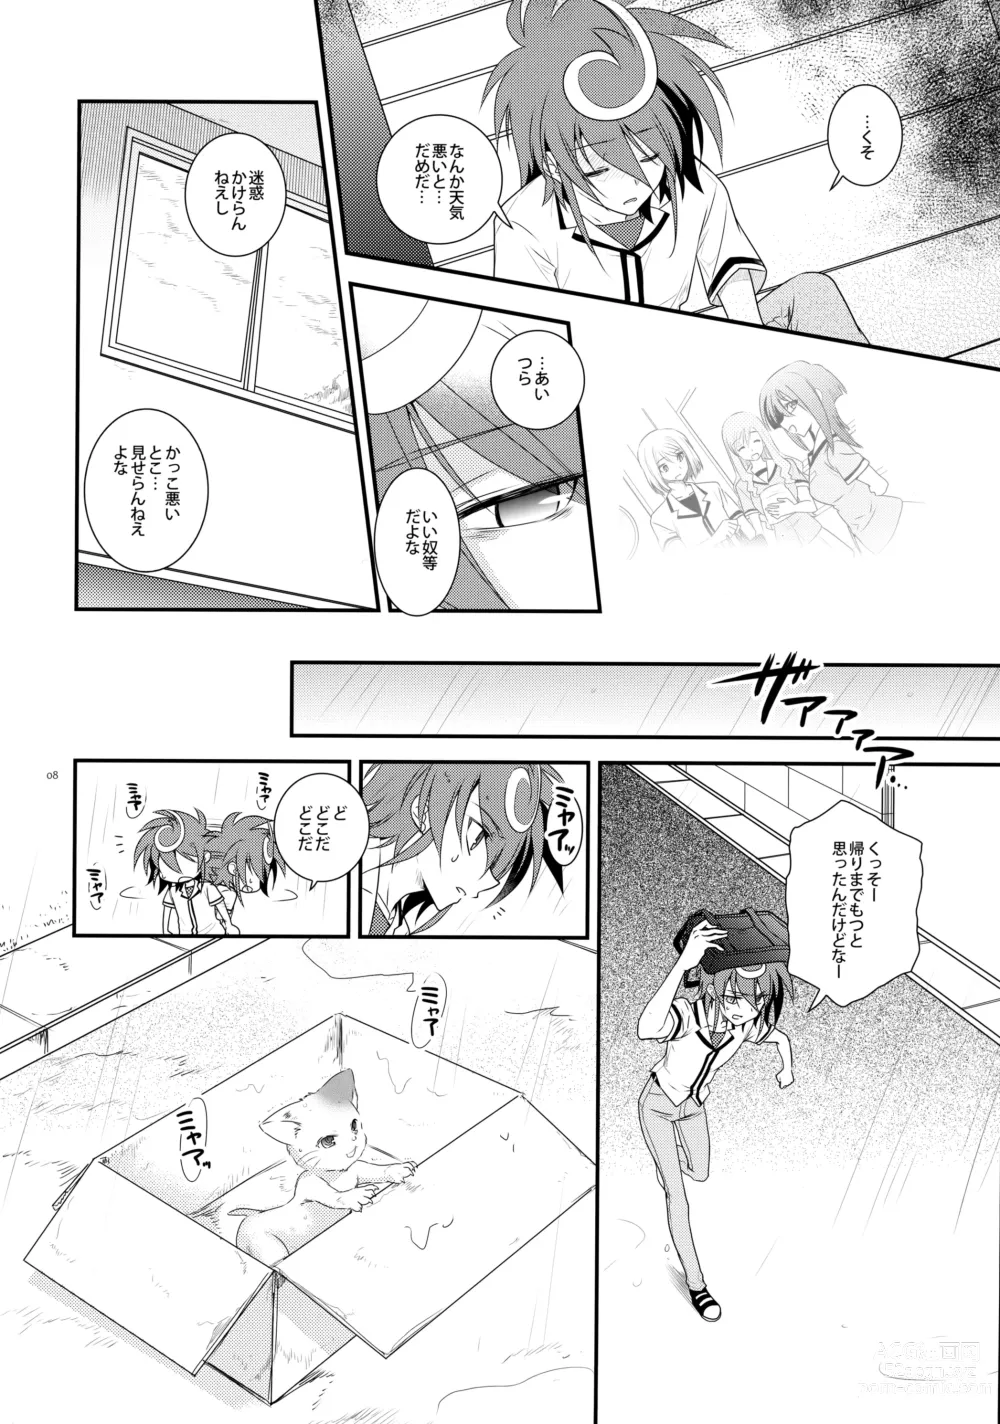 Page 7 of doujinshi Nure Hane no Tengai to Mayoi Neko